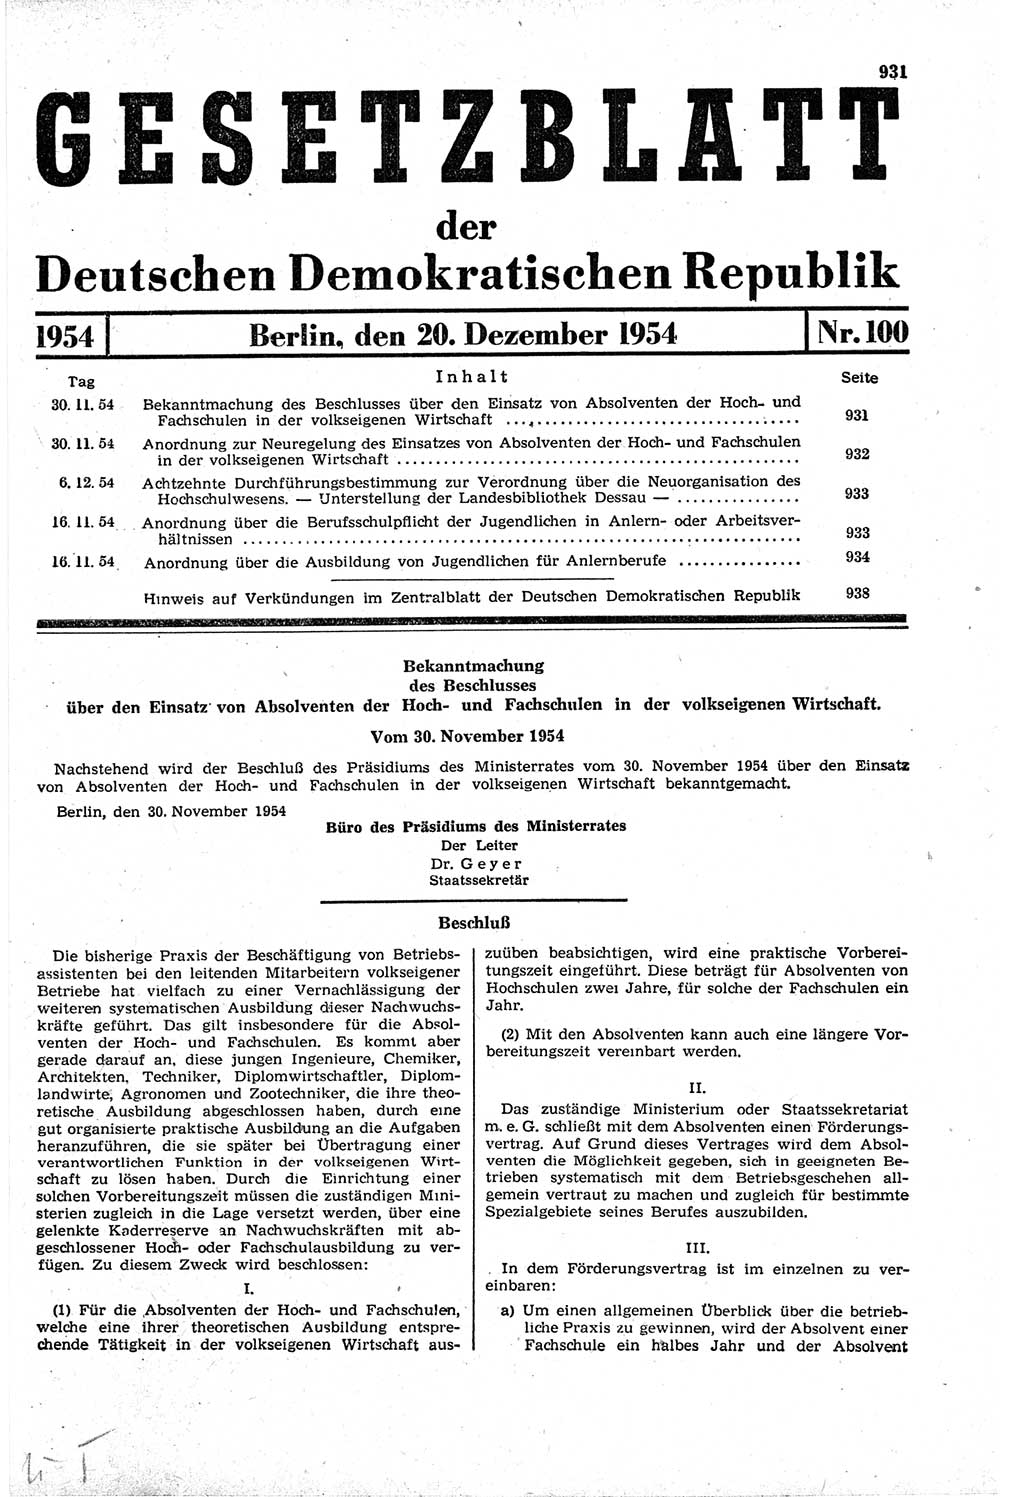 Gesetzblatt (GBl.) der Deutschen Demokratischen Republik (DDR) 1954, Seite 931 (GBl. DDR 1954, S. 931)